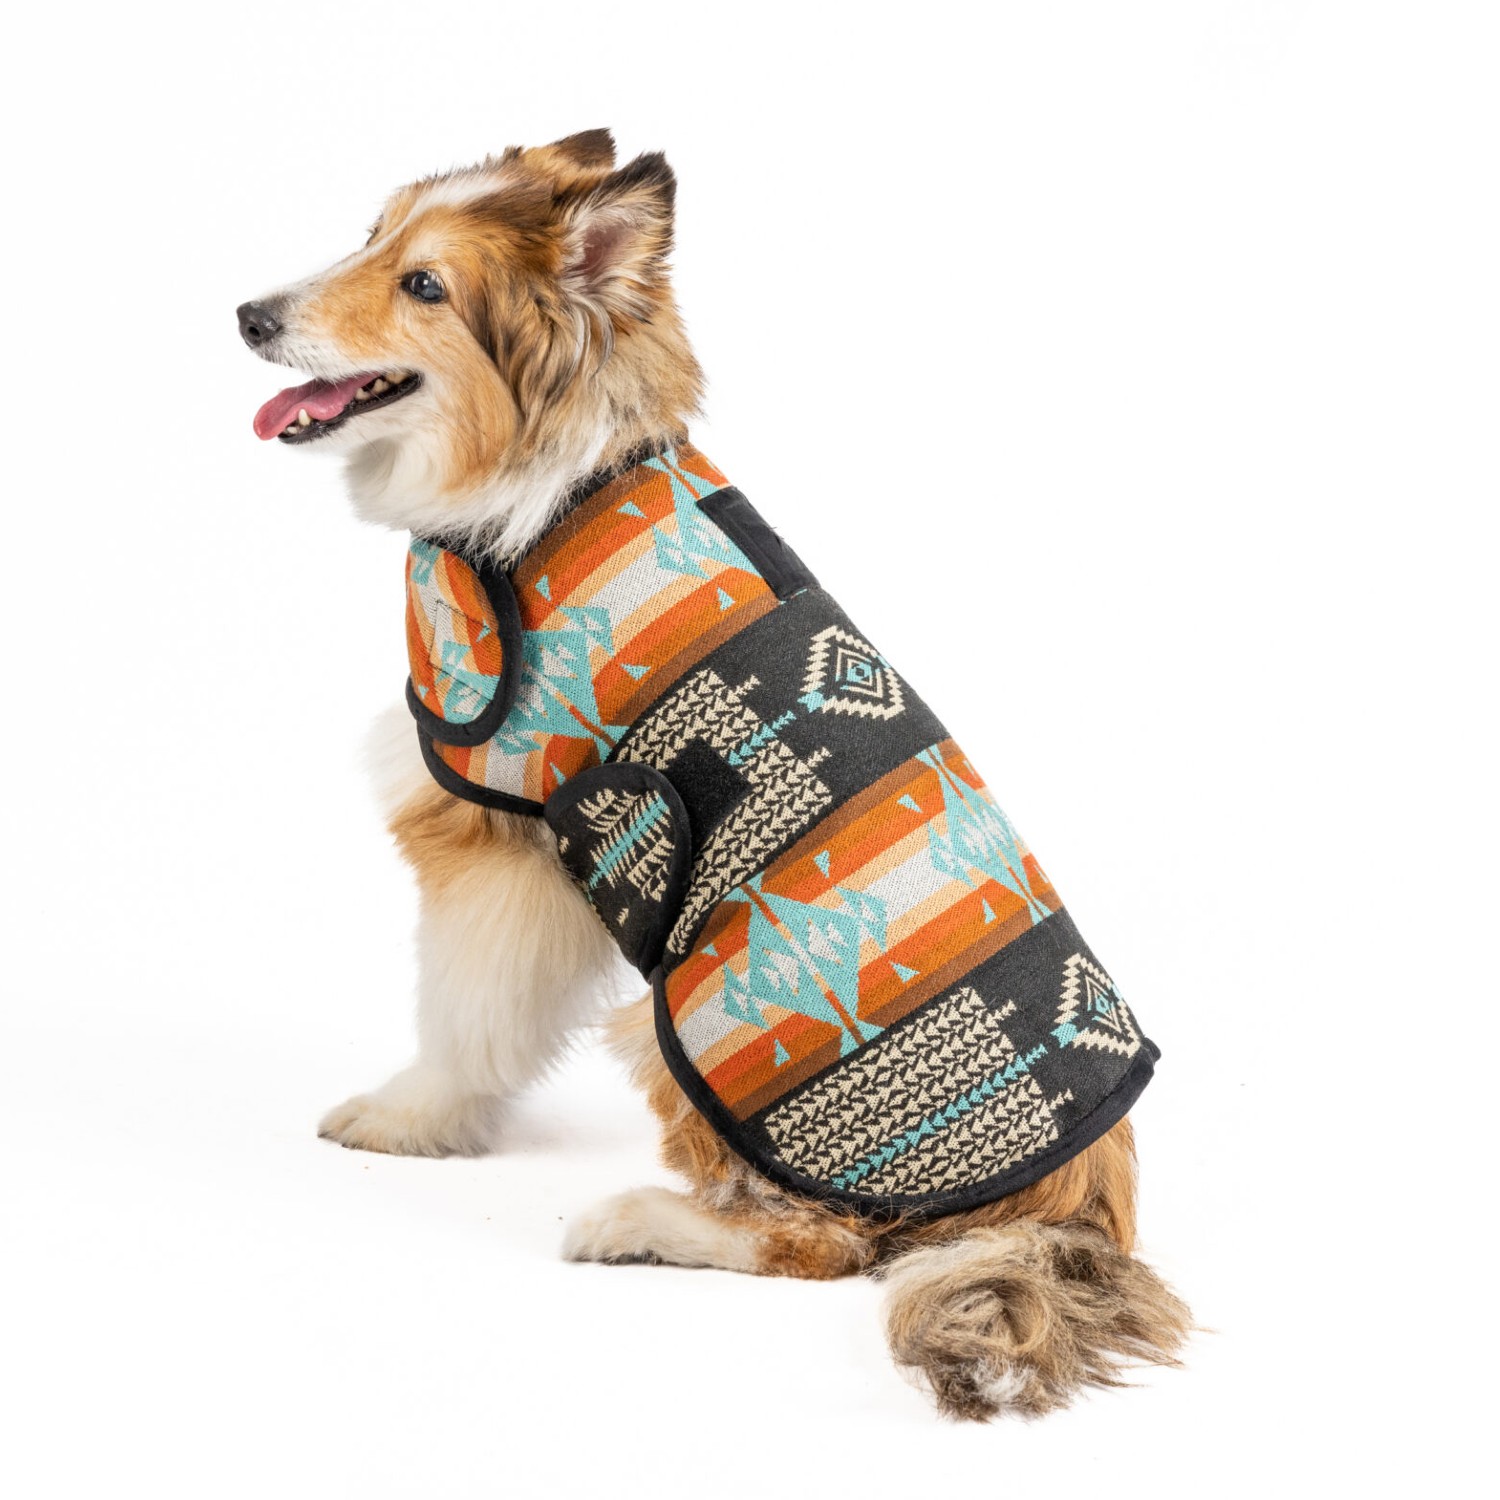 Chilly Dog Southwest Black Canyon Blanket Dog Coat